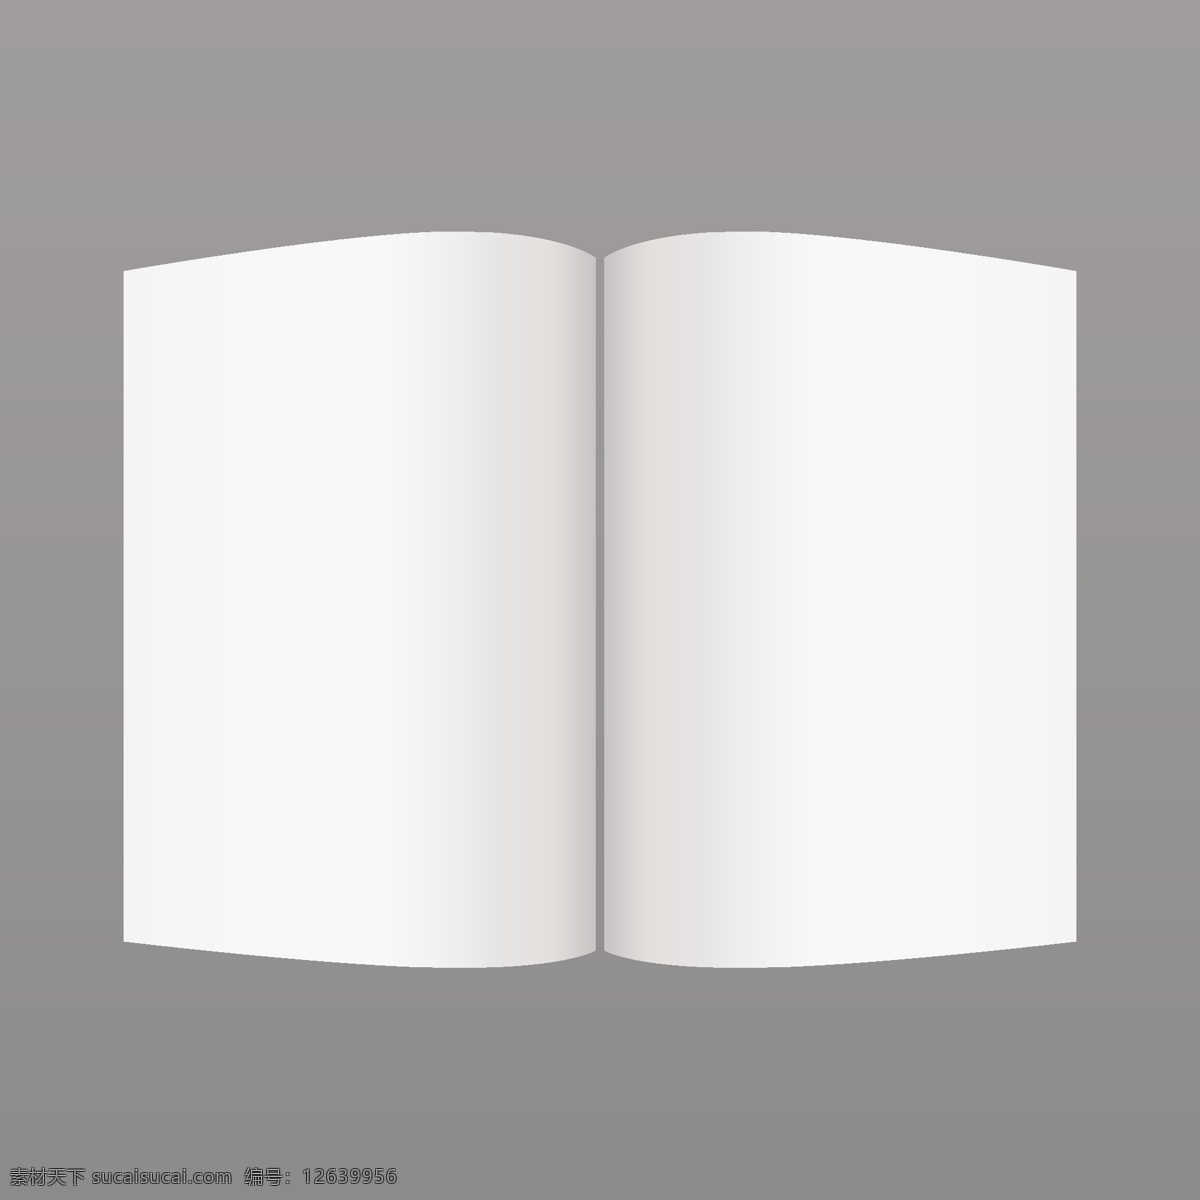 简单 白色 模型 杂志 小册子 传单 样机 菜单 卡 书 模板 餐厅 纸 信笺 空间 演示 文具 白 信息 清洁 打印